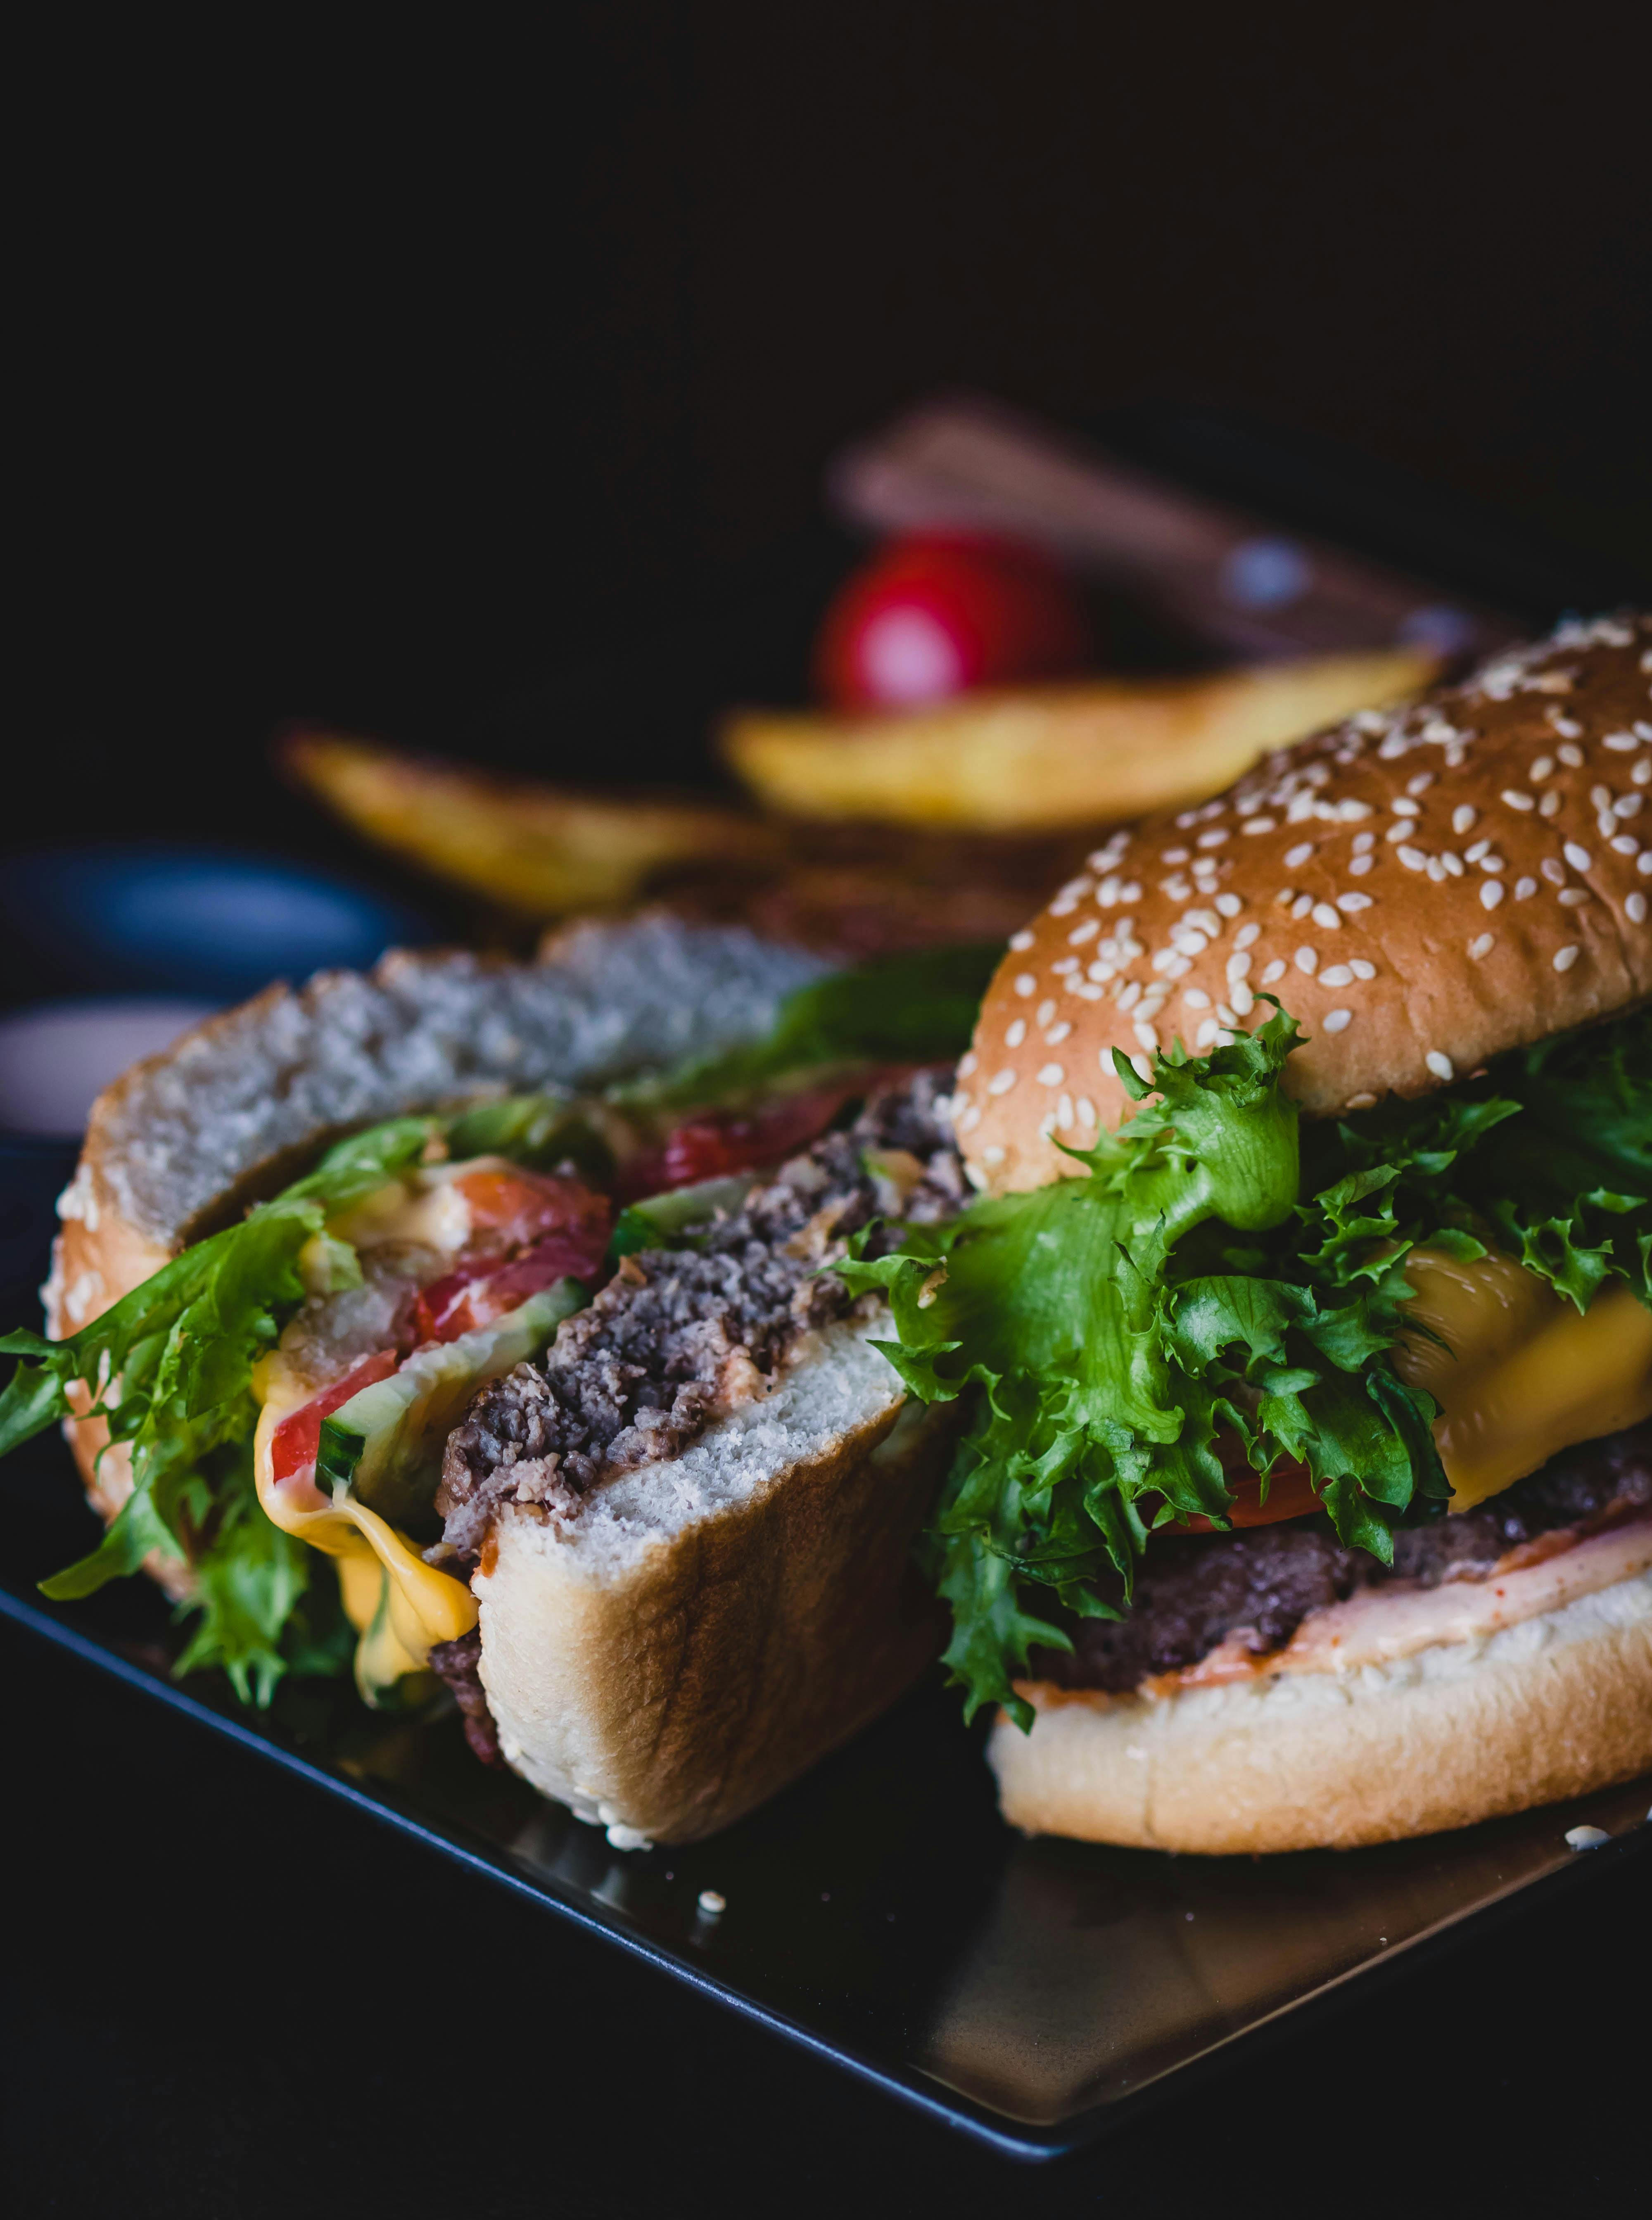 Sliced burger | Source: Pexels